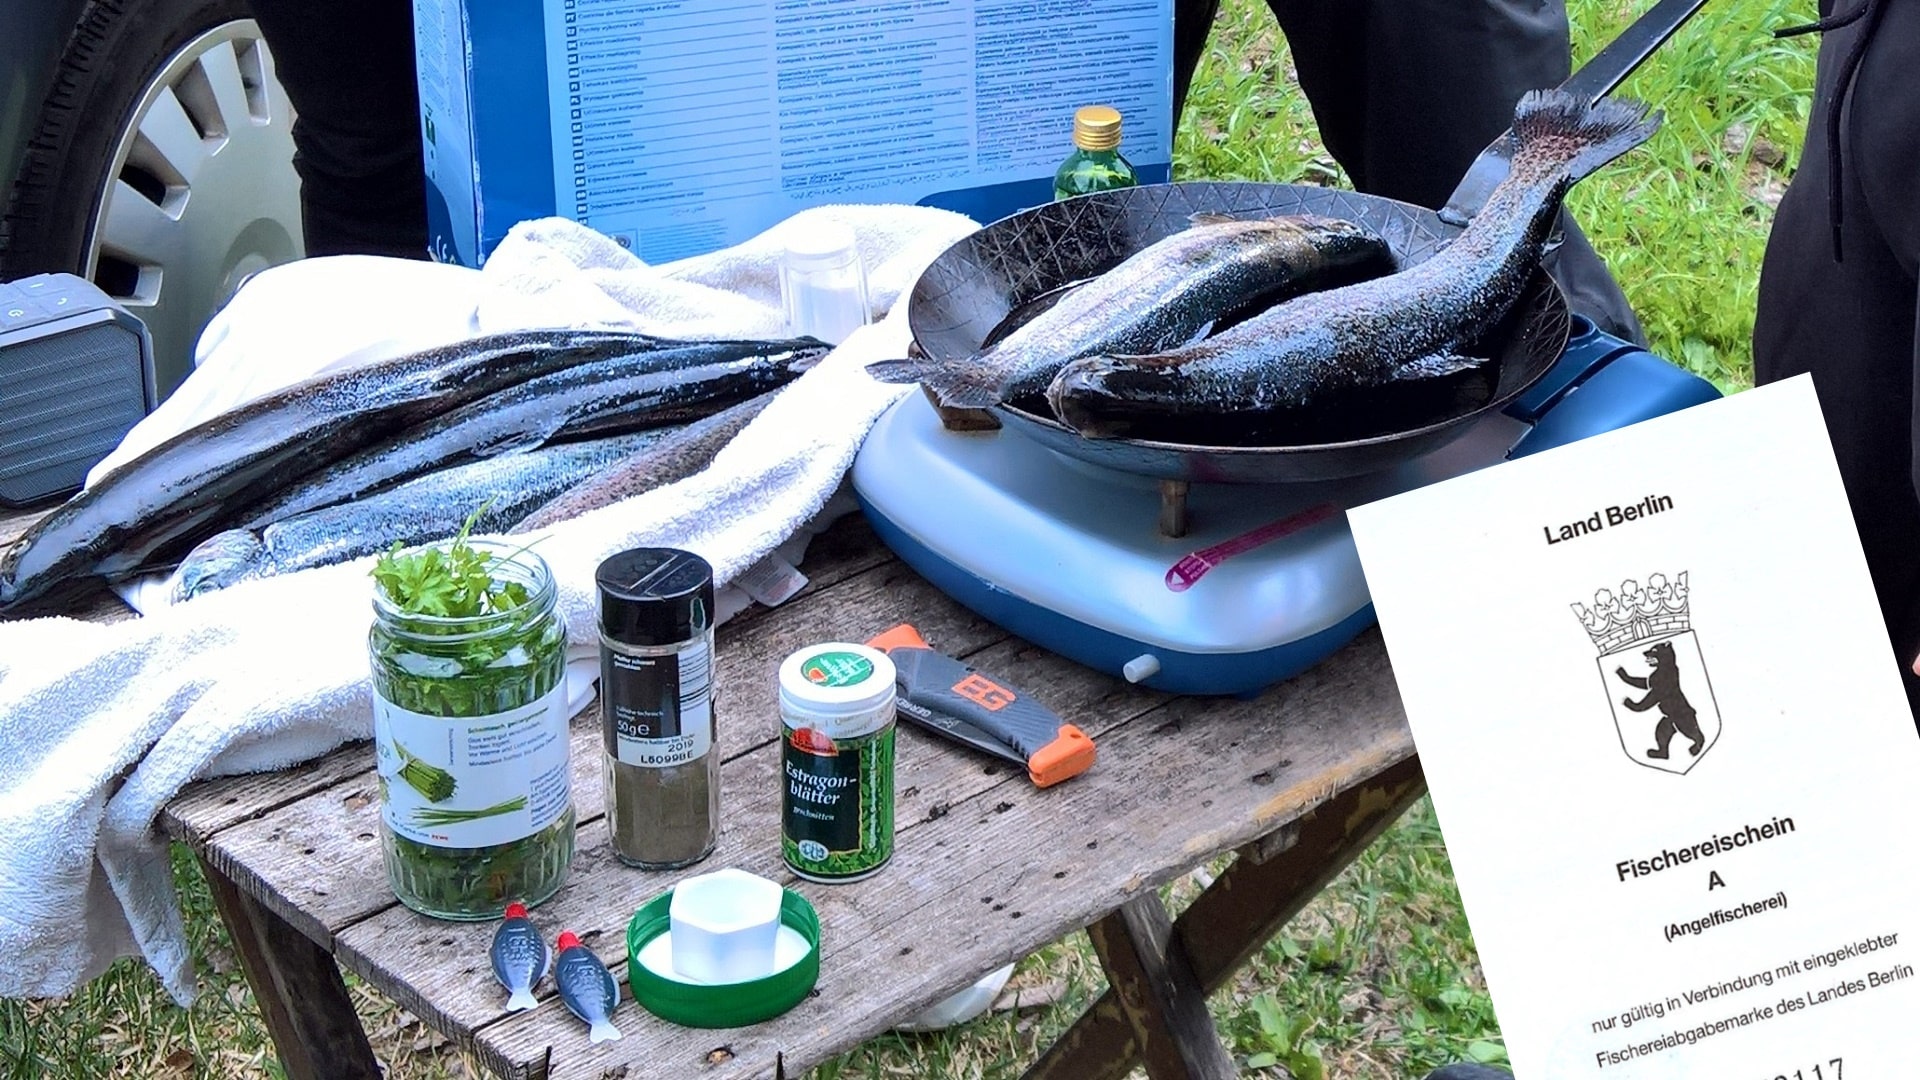 Auf einem Campingtisch liegen frische Forellen, Gewürze, ein Messer und eine Bratpfanne. Auf einem Gaskocher werden zwei Forellen gebraten. Rechts unten ist der Fischereischein des Landes Berlin zu sehen.